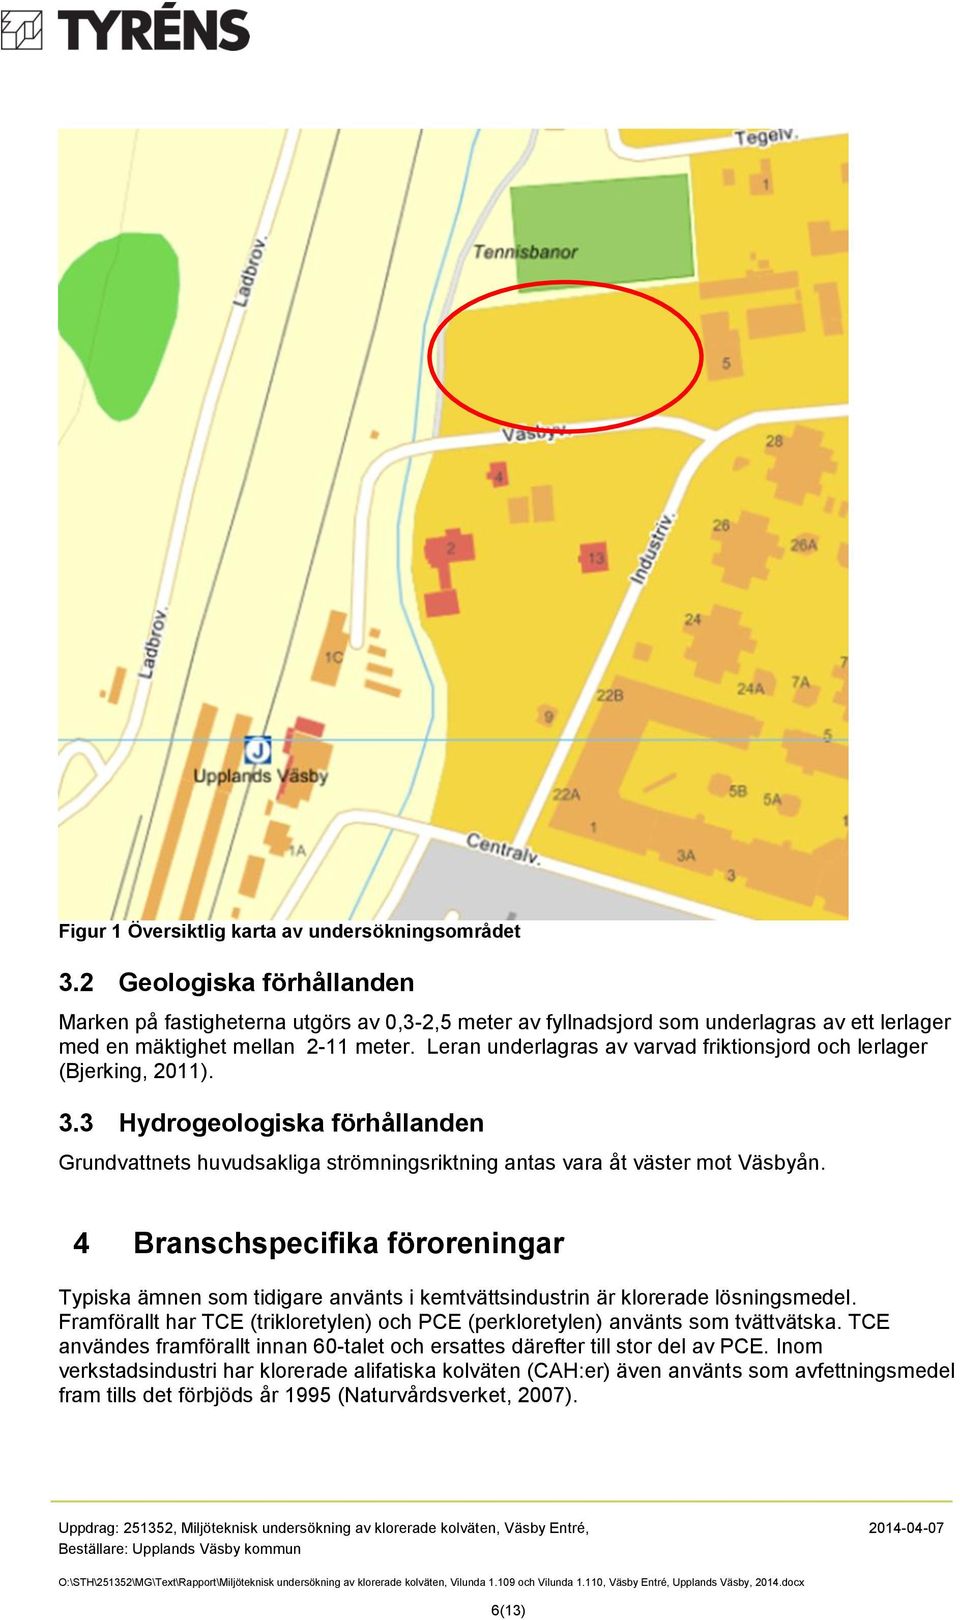 Leran underlagras av varvad friktionsjord och lerlager (Bjerking, ). 3.3 Hydrogeologiska förhållanden Grundvattnets huvudsakliga strömningsriktning antas vara åt väster mot Väsbyån.